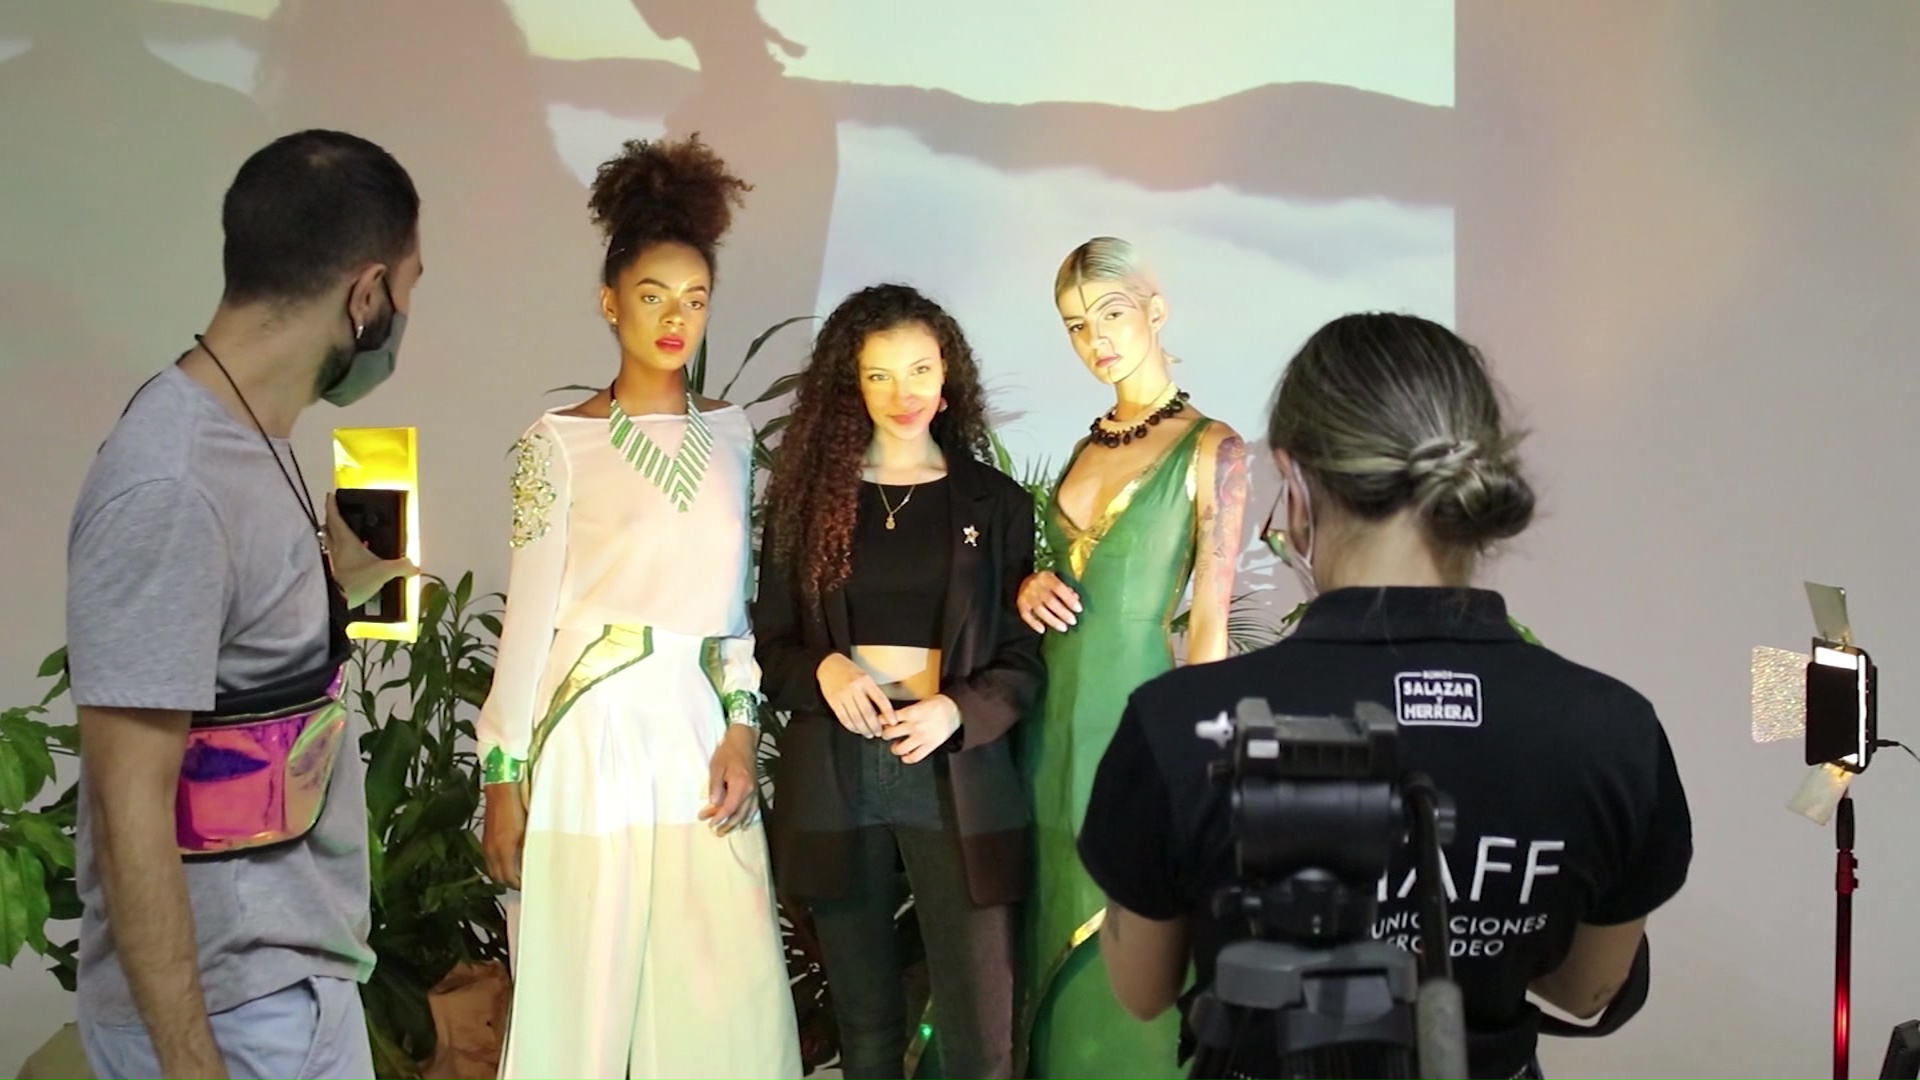 Estudiantes antioqueños participarán en el Ixel Fashion Film Festival